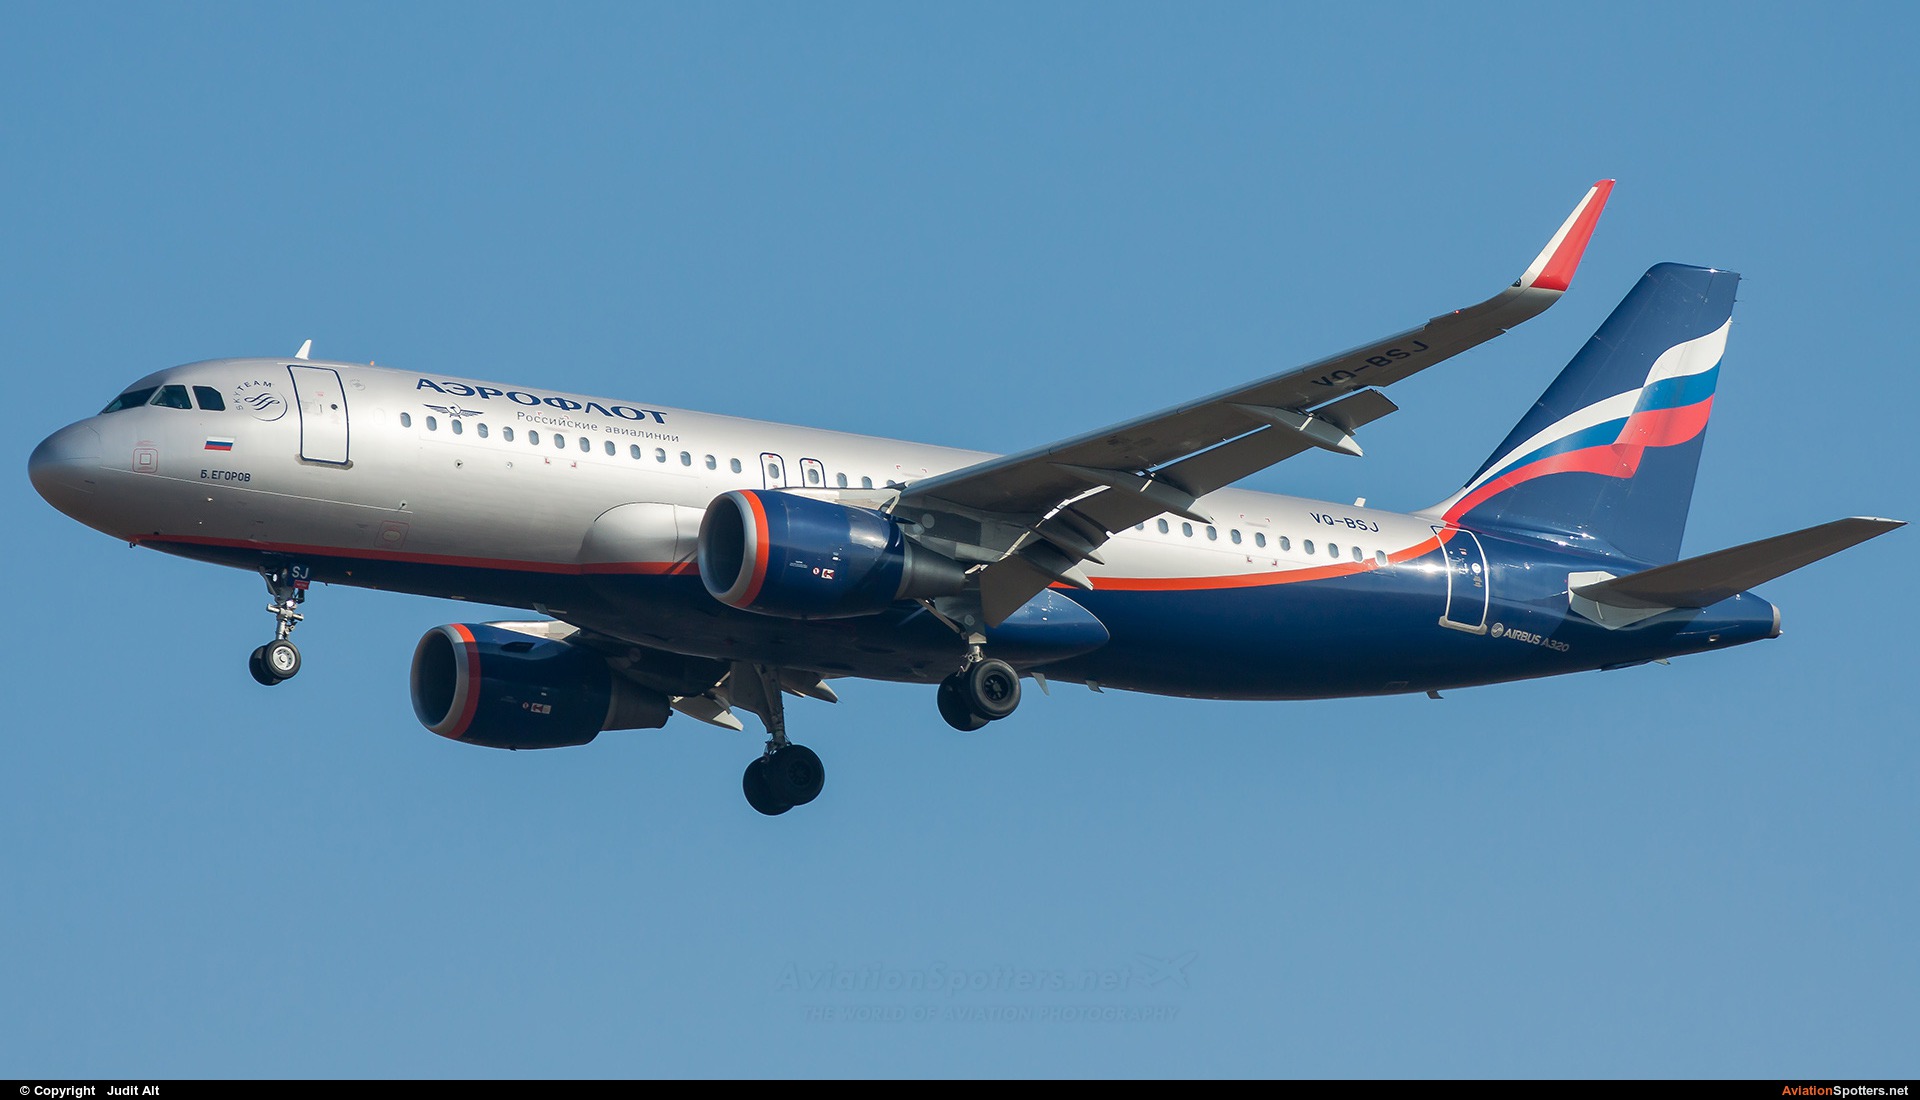 Aeroflot  -  A320-214  (VQ-BSJ) By Judit Alt (Judit)